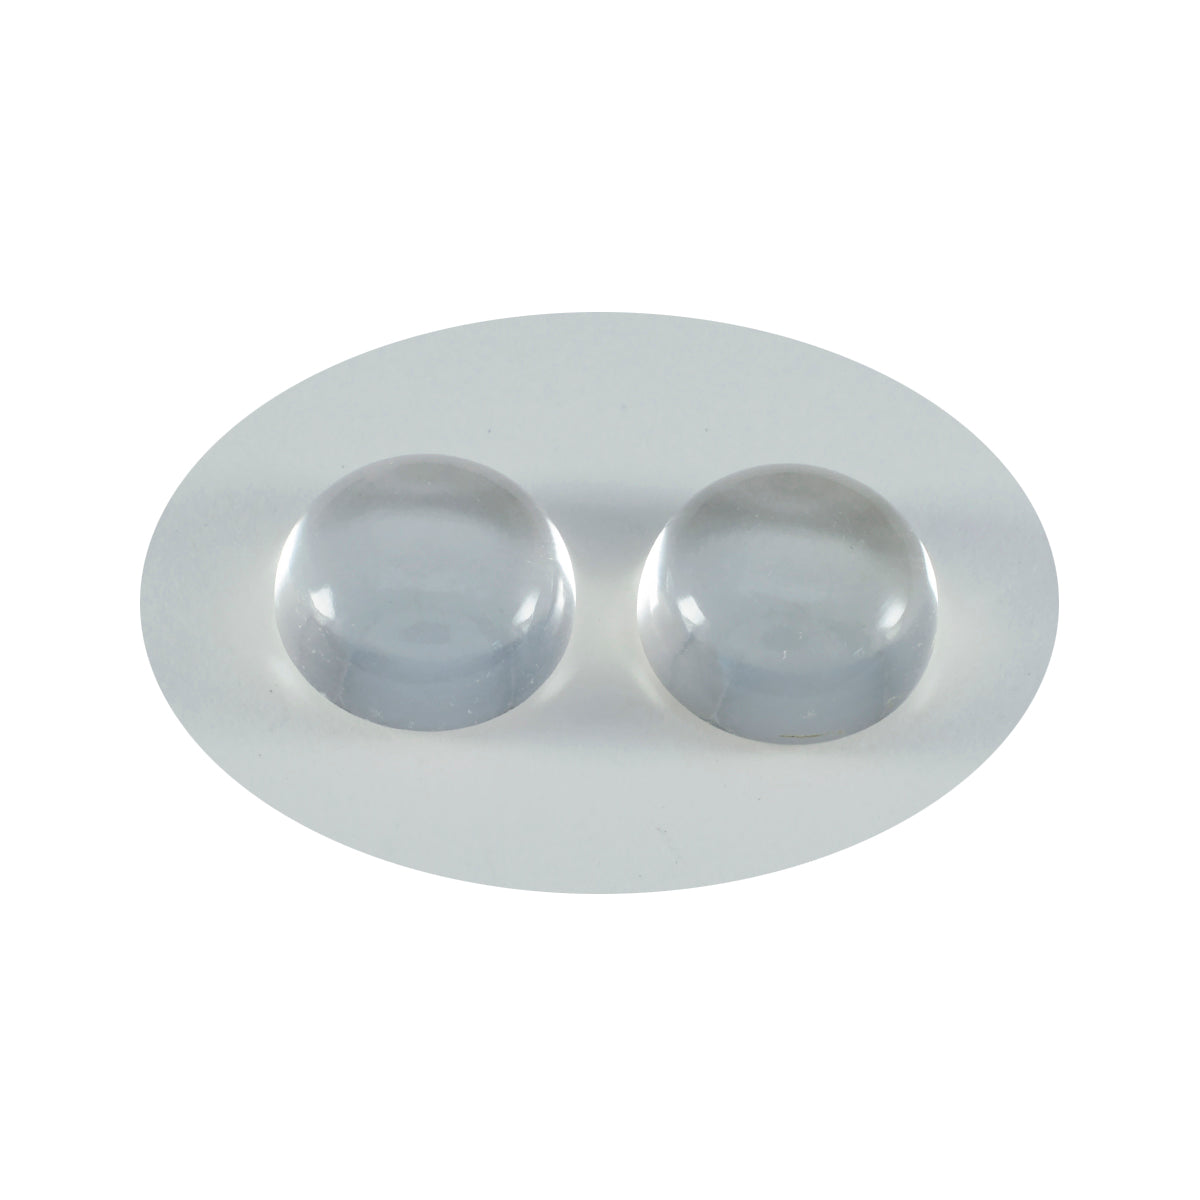 riyogems 1 шт., белый кристалл кварца, кабошон 12x12 мм, круглая форма, привлекательное качество, свободные драгоценные камни